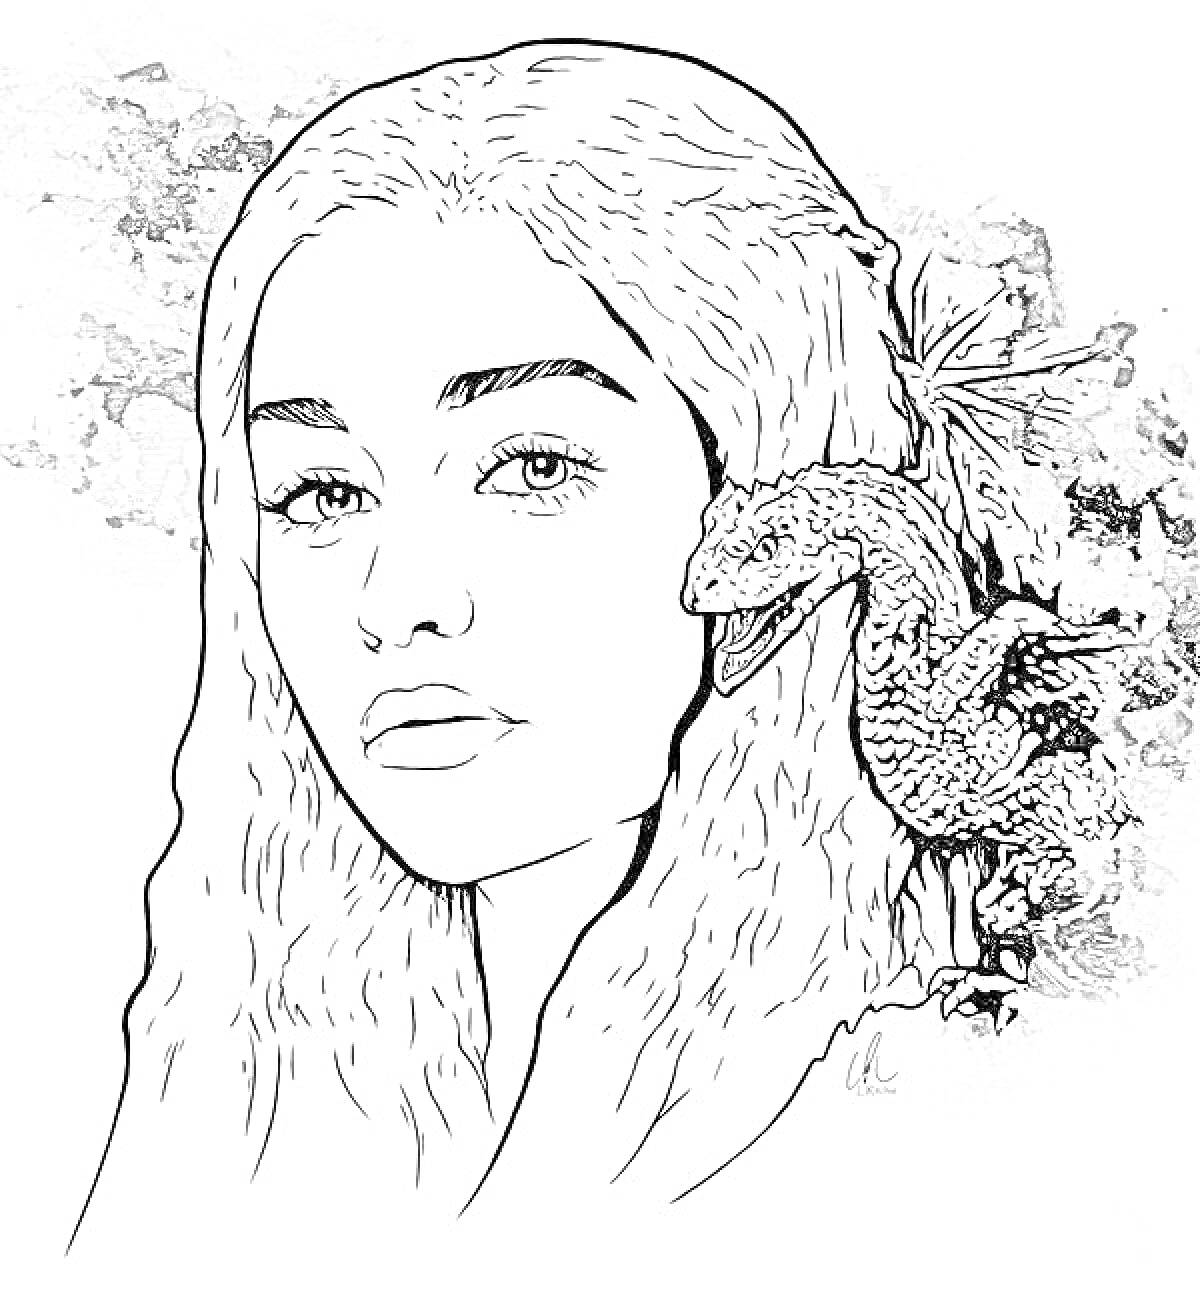 Раскраска Портрет девушки с длинными волосами и дракончиком на плече